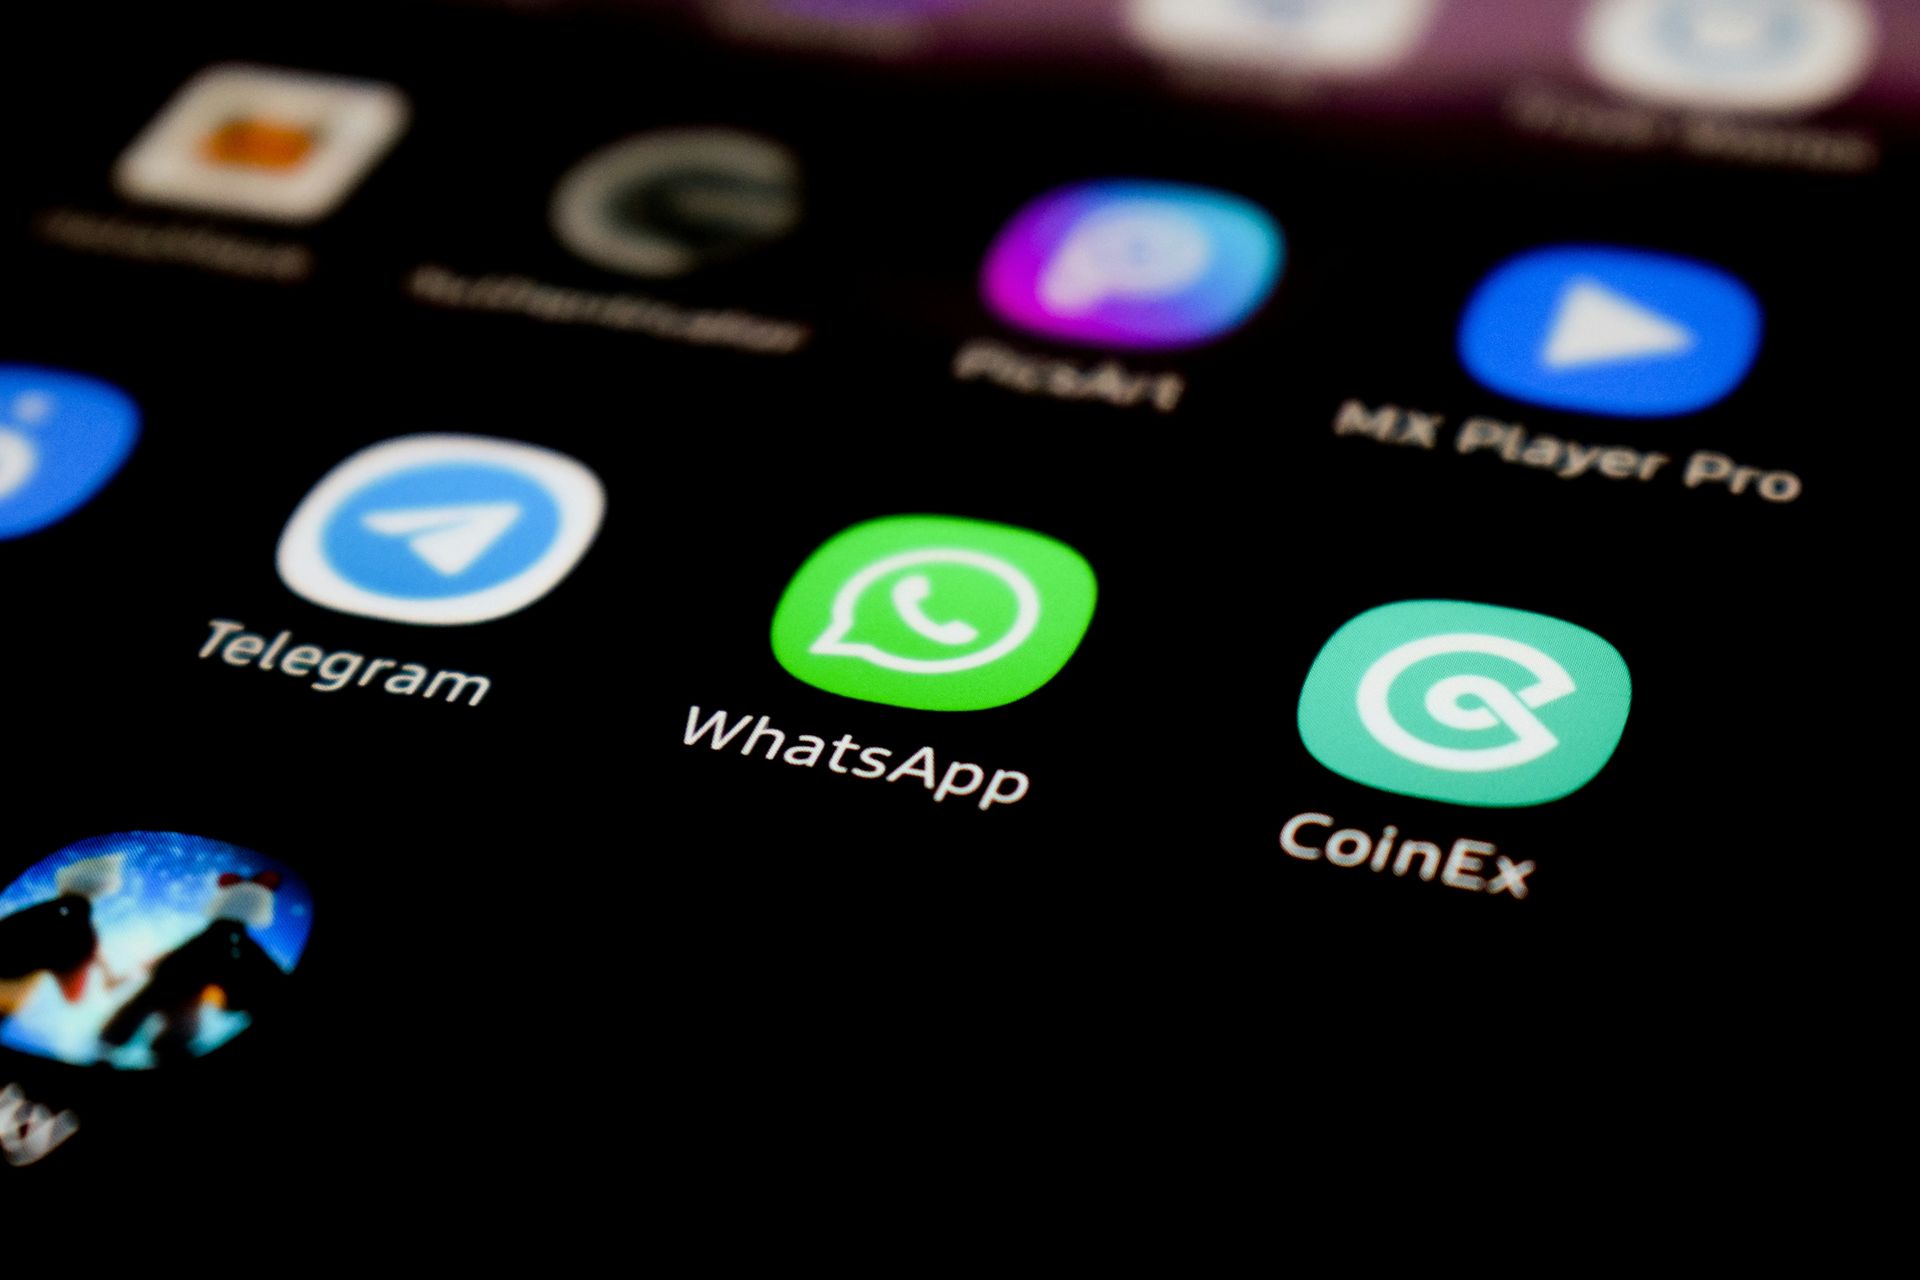 Новое обновление позволяет использовать более длинные голосовые сообщения о статусе WhatsApp.